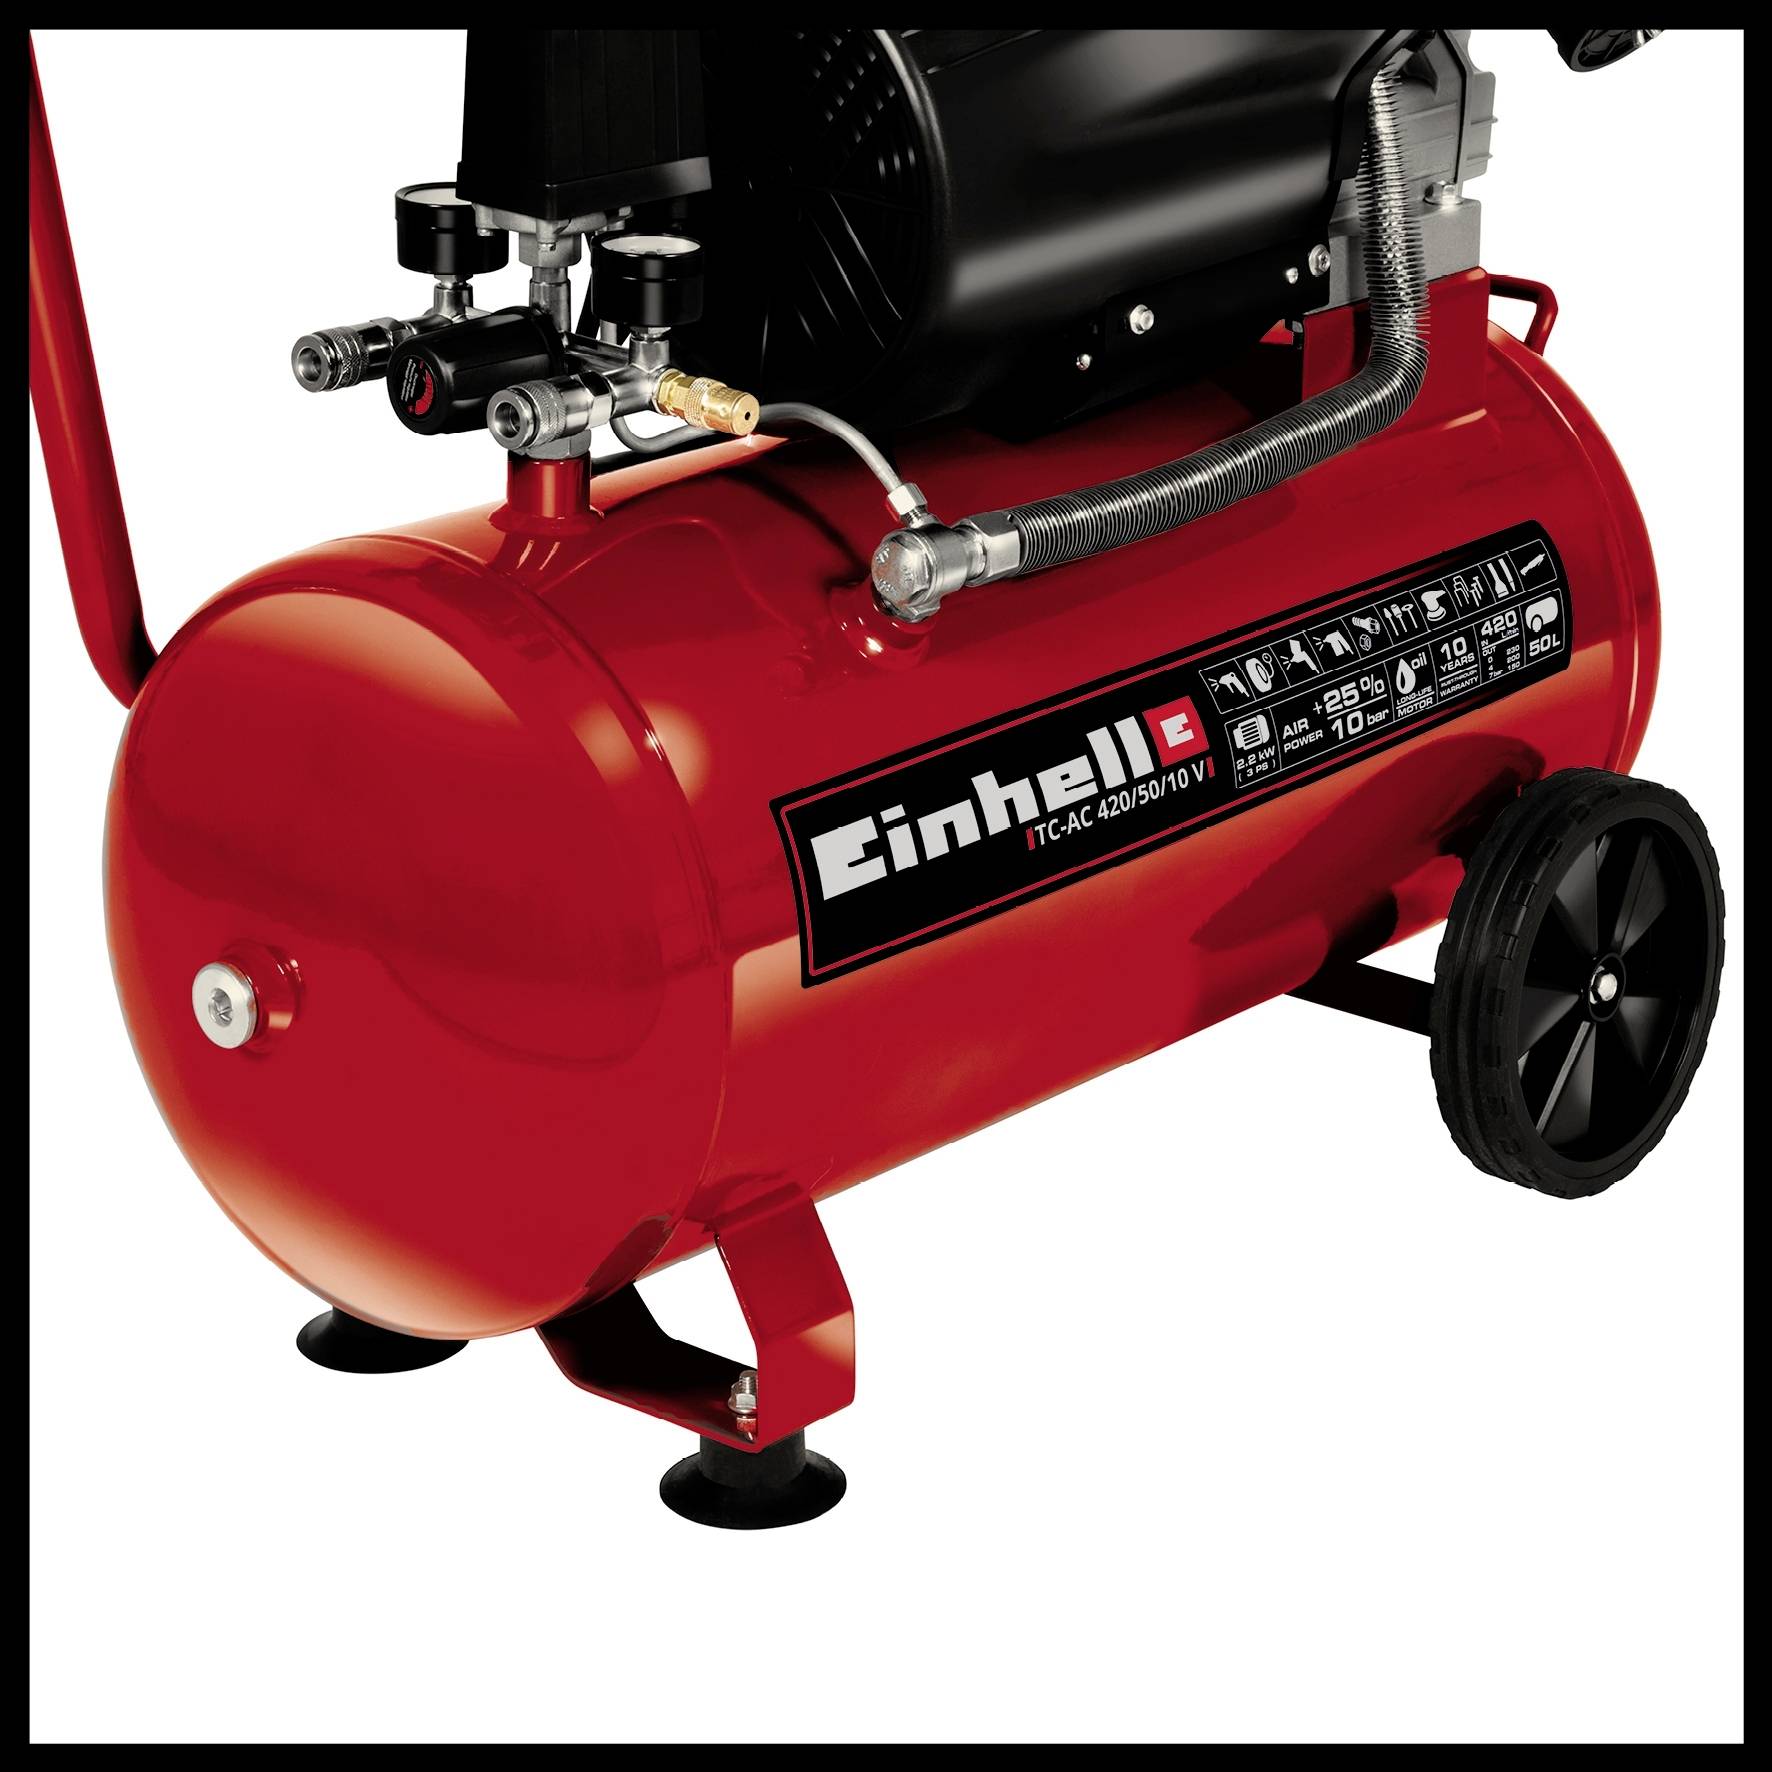 Einhell Air Compressor TC-AC 420/50/10 V Power Tool Services